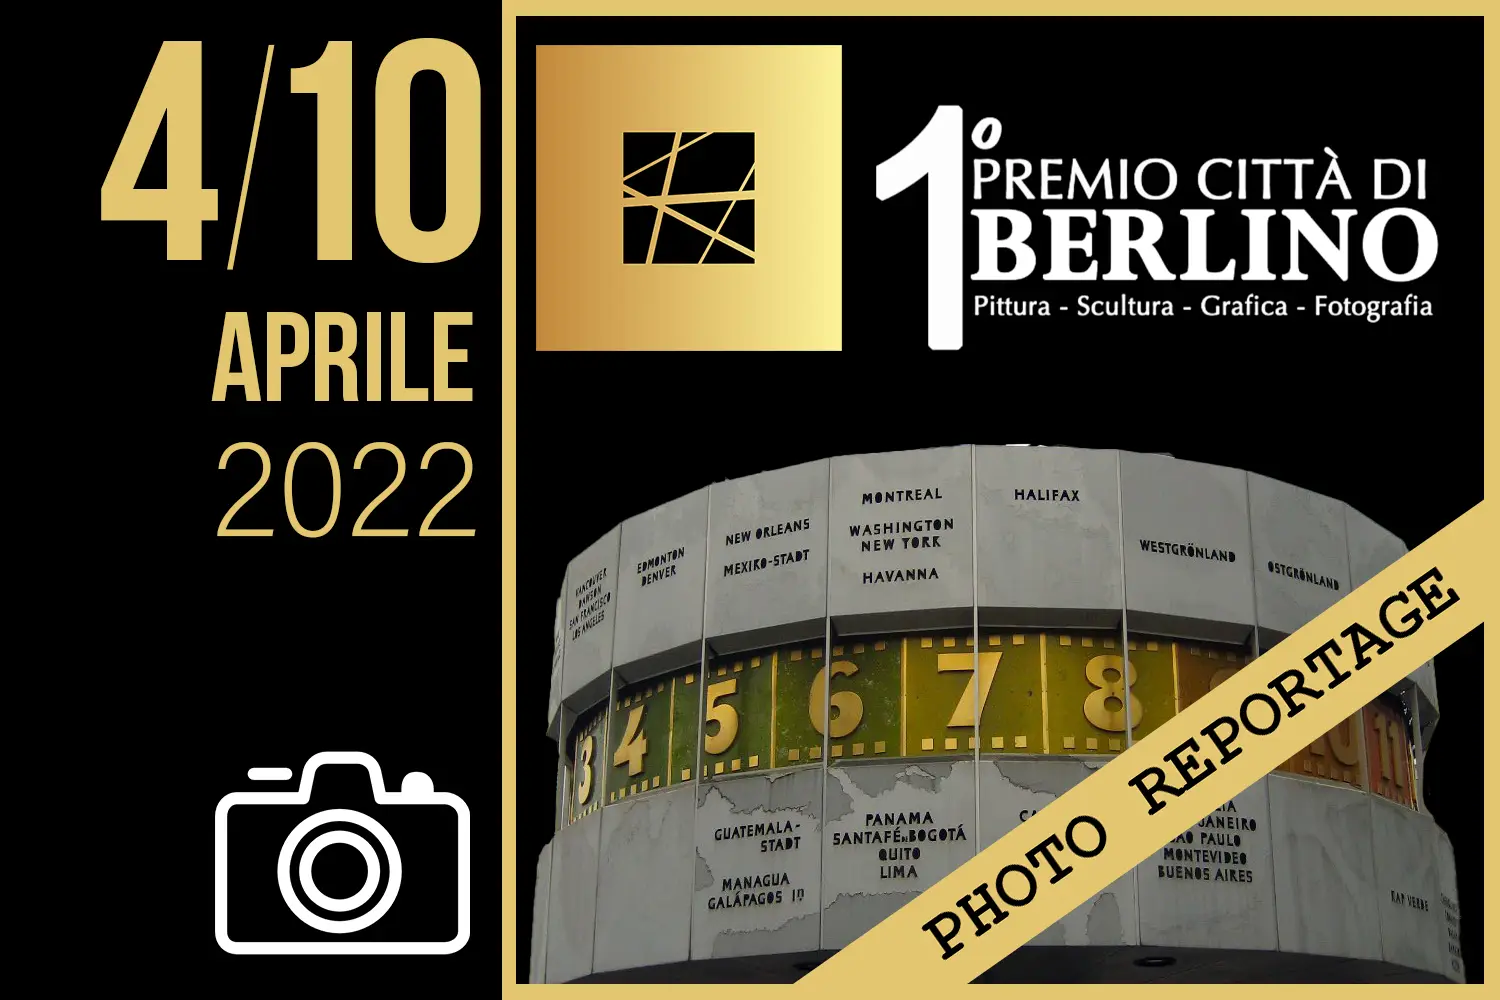 VON ZEIDLER ART GALLERY 2022 - BERLINO 4/10 aprile 2022